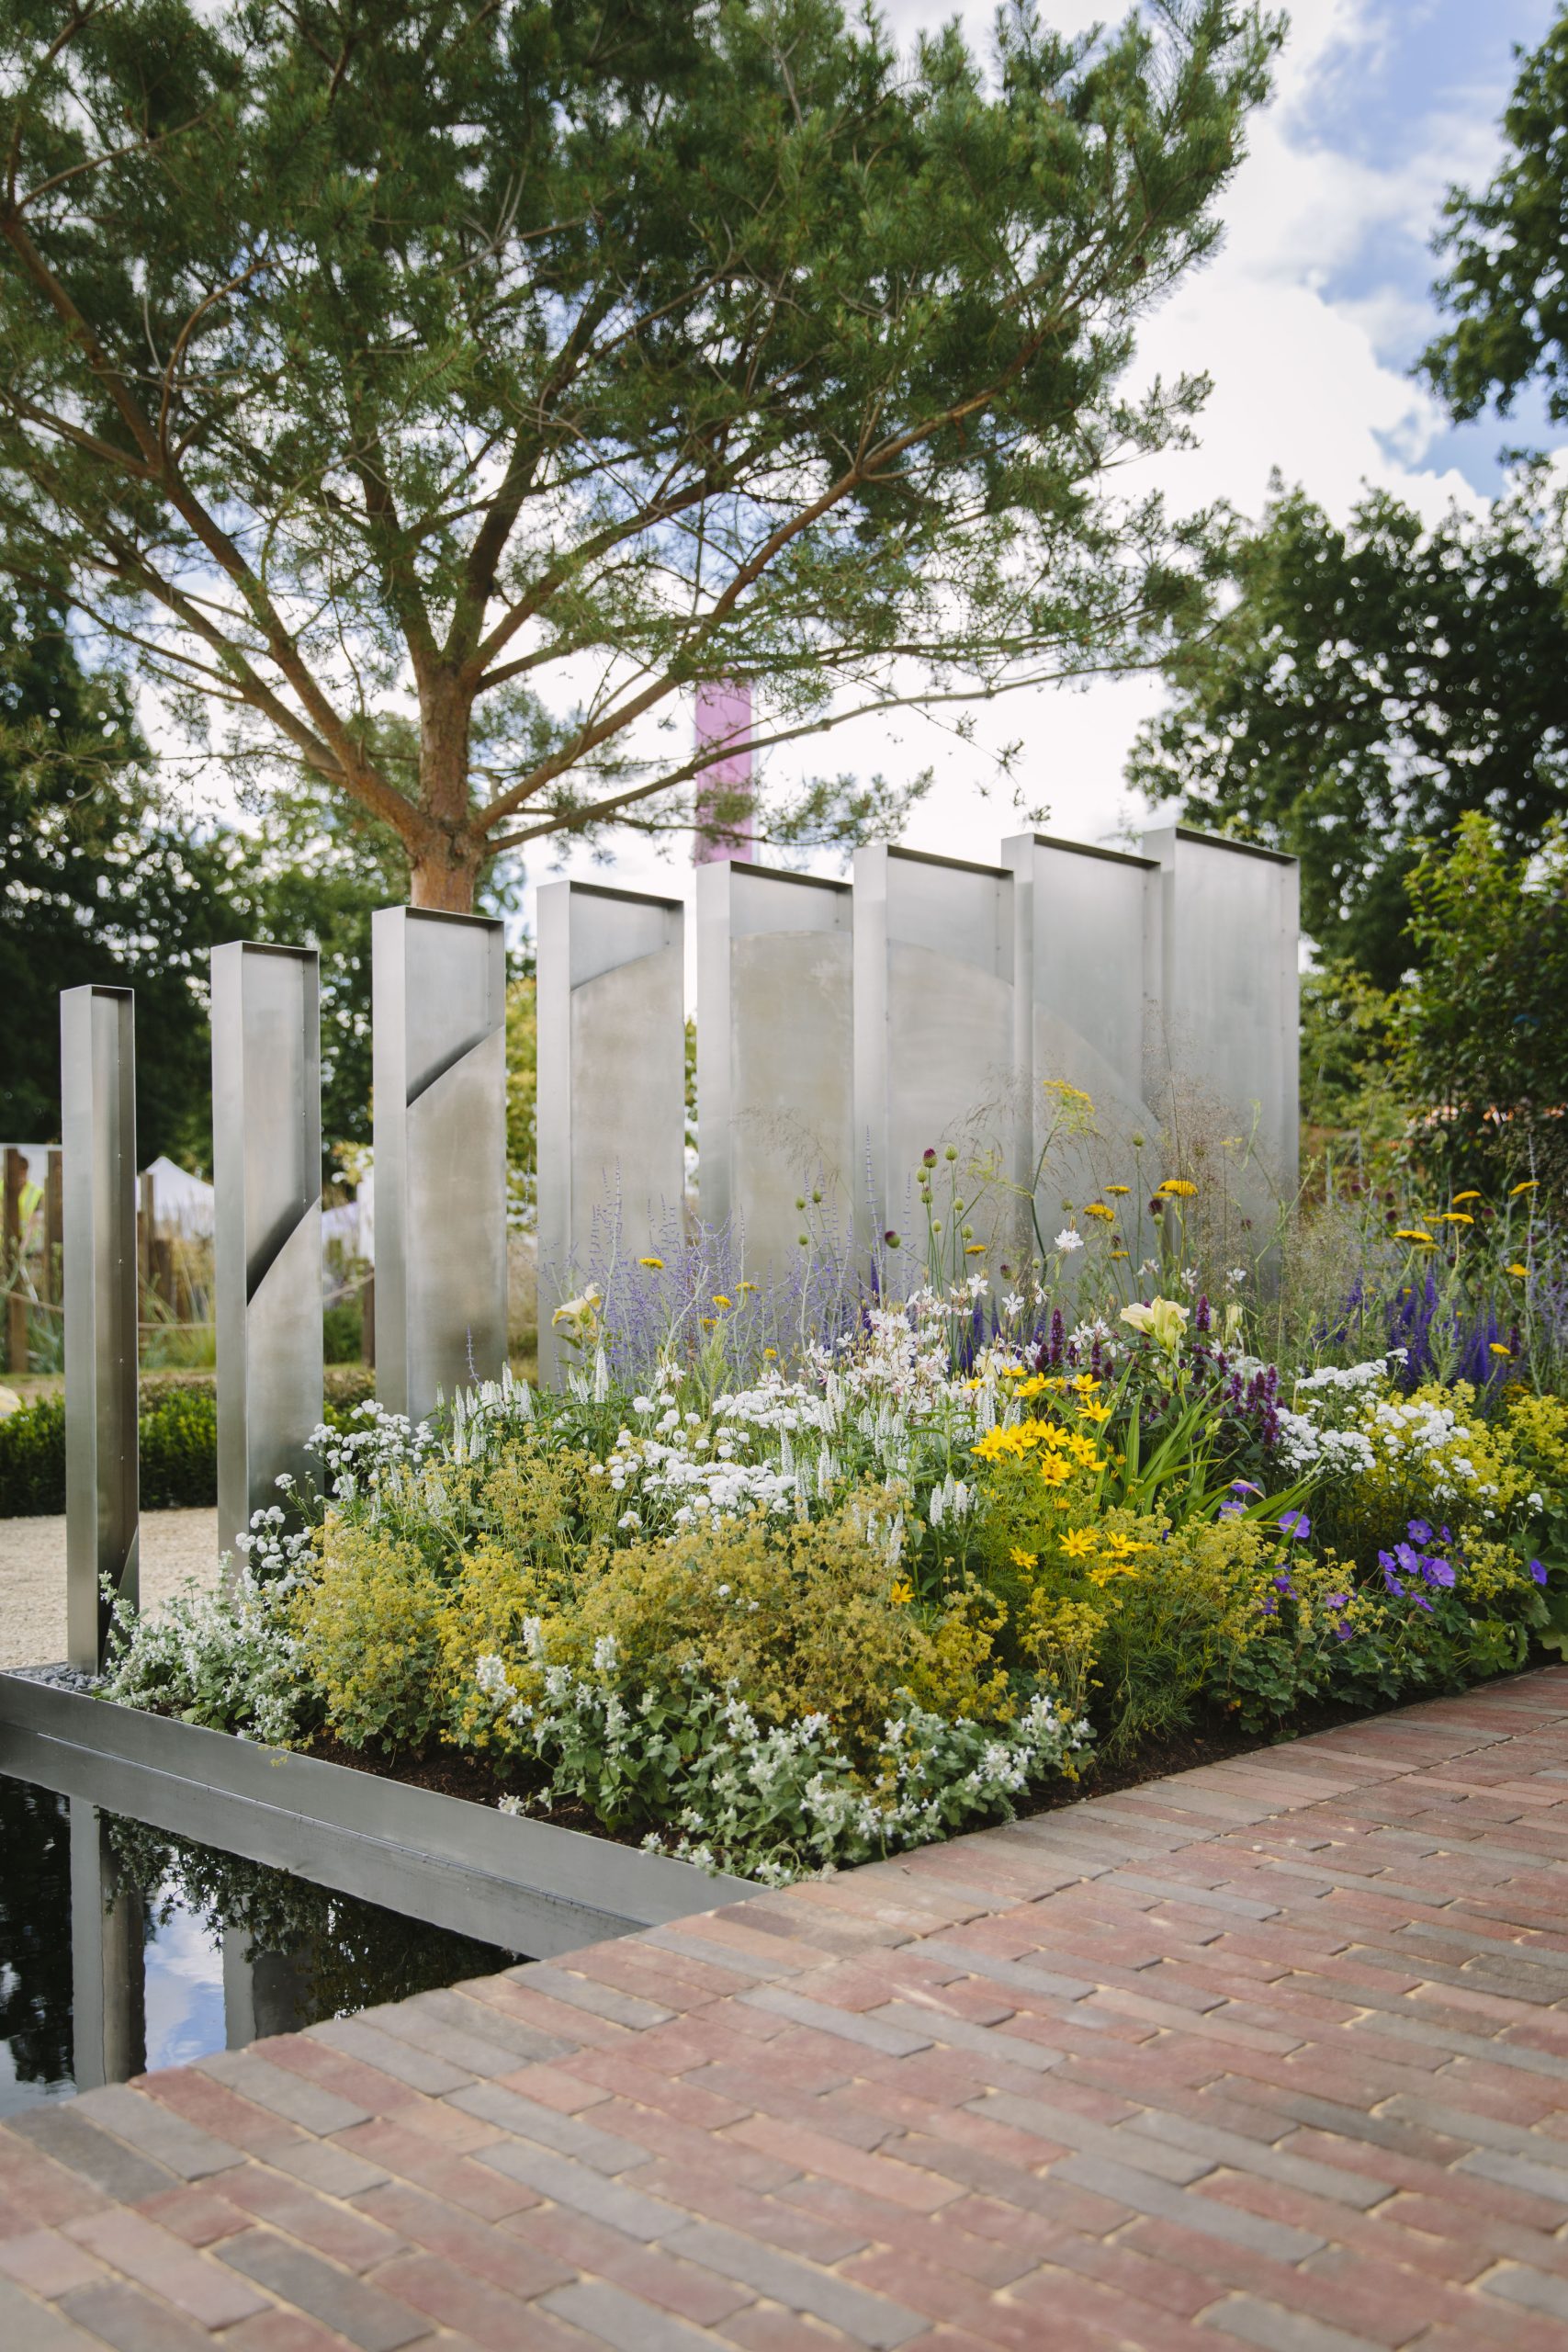 James Jones Stainless Steel Garden Sculpture Hampton Court 2022 Together